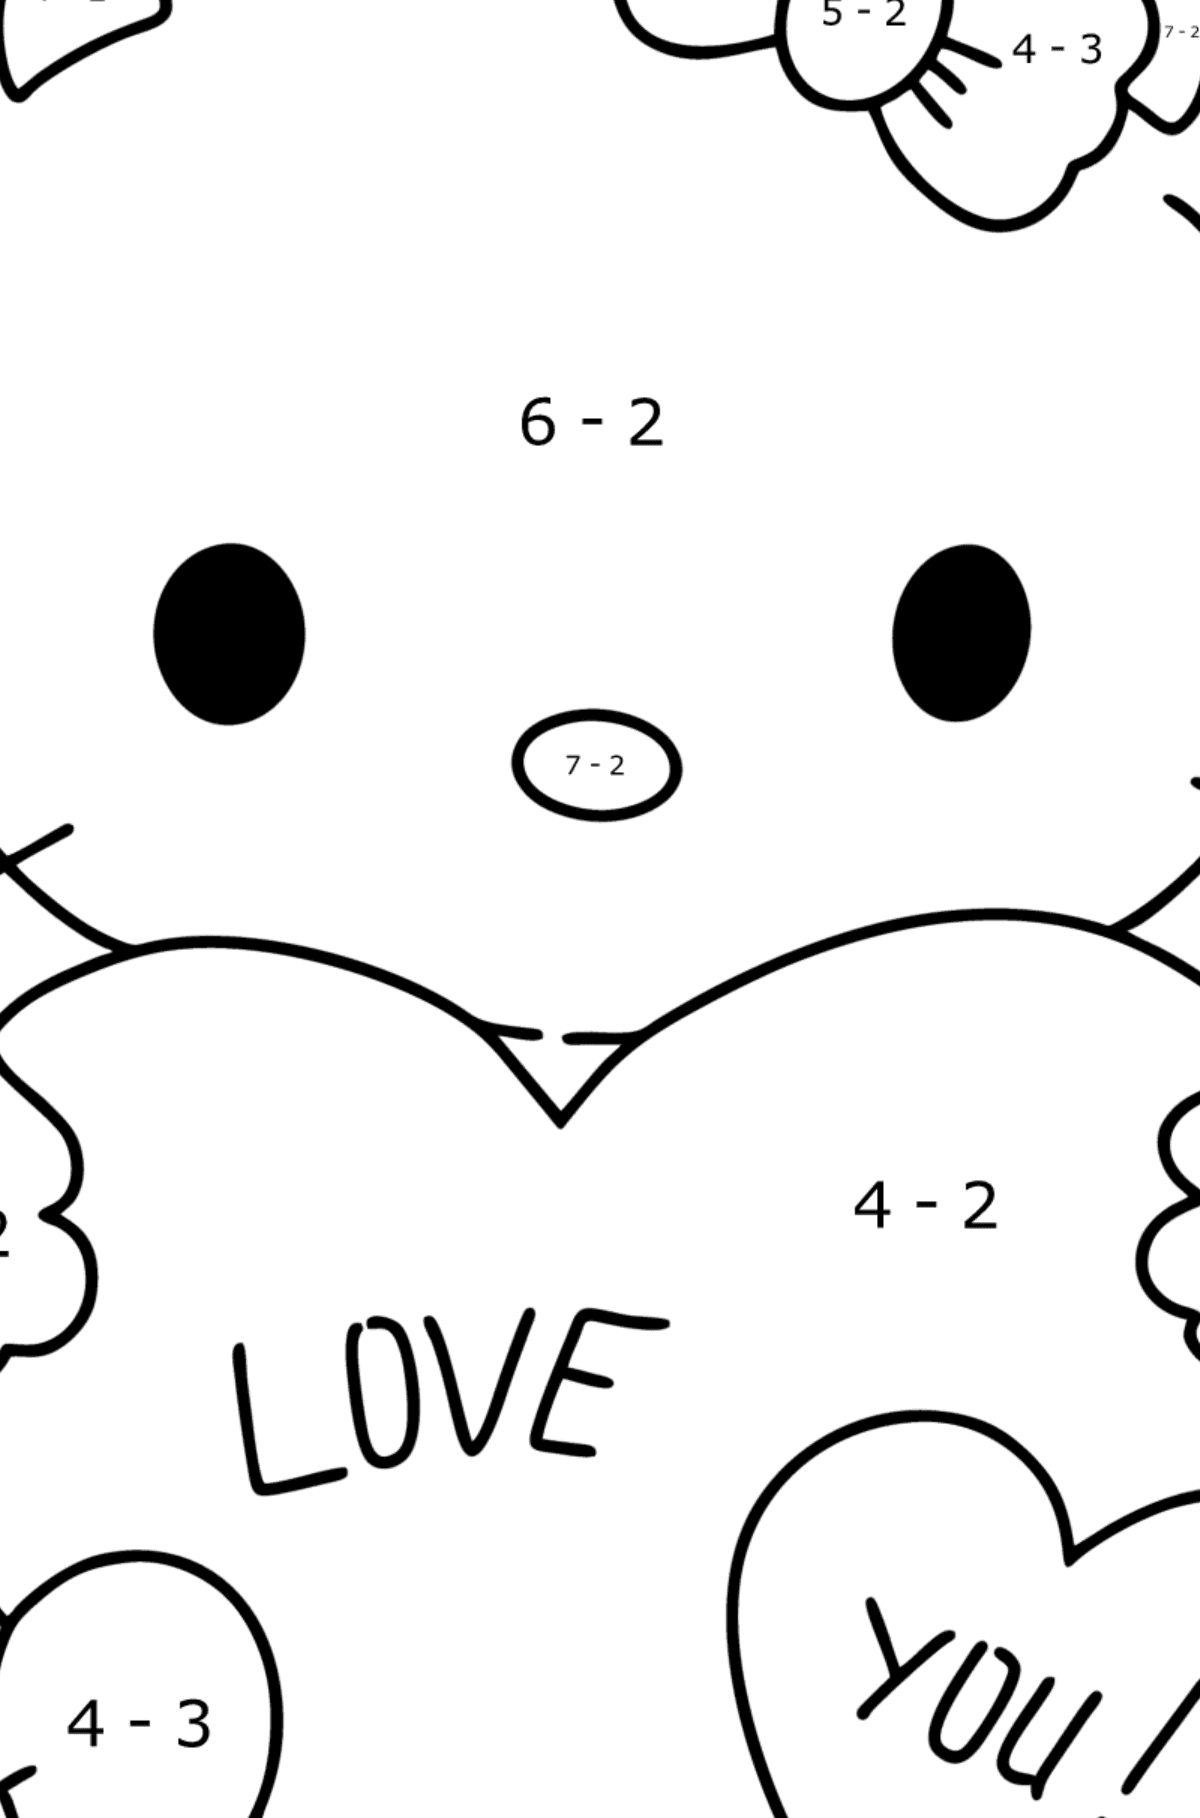 Desenho para colorir de Hello Kitty e corações - Colorindo com Matemática - Subtração para Crianças